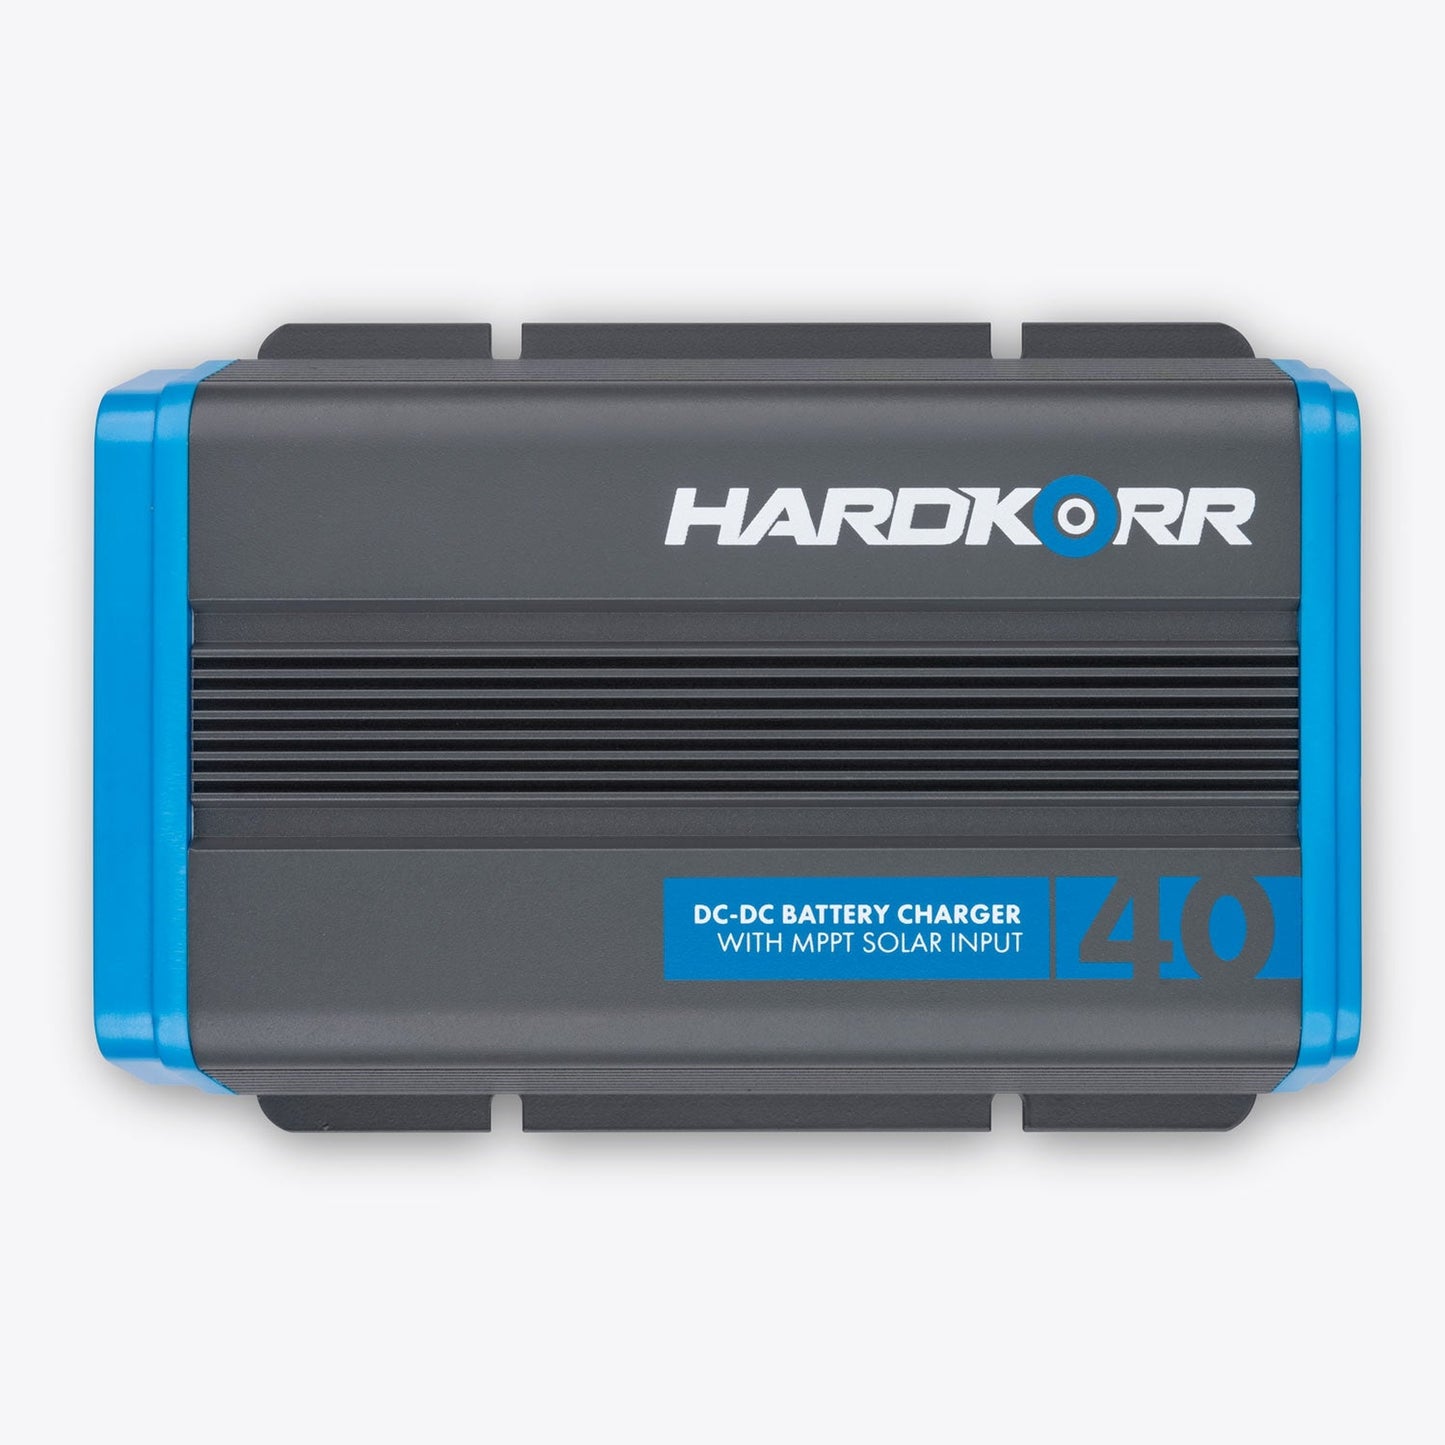 Hard Korr Under Bonnet 40A DC-DC Battery Charger With MPPT Solar Regulator